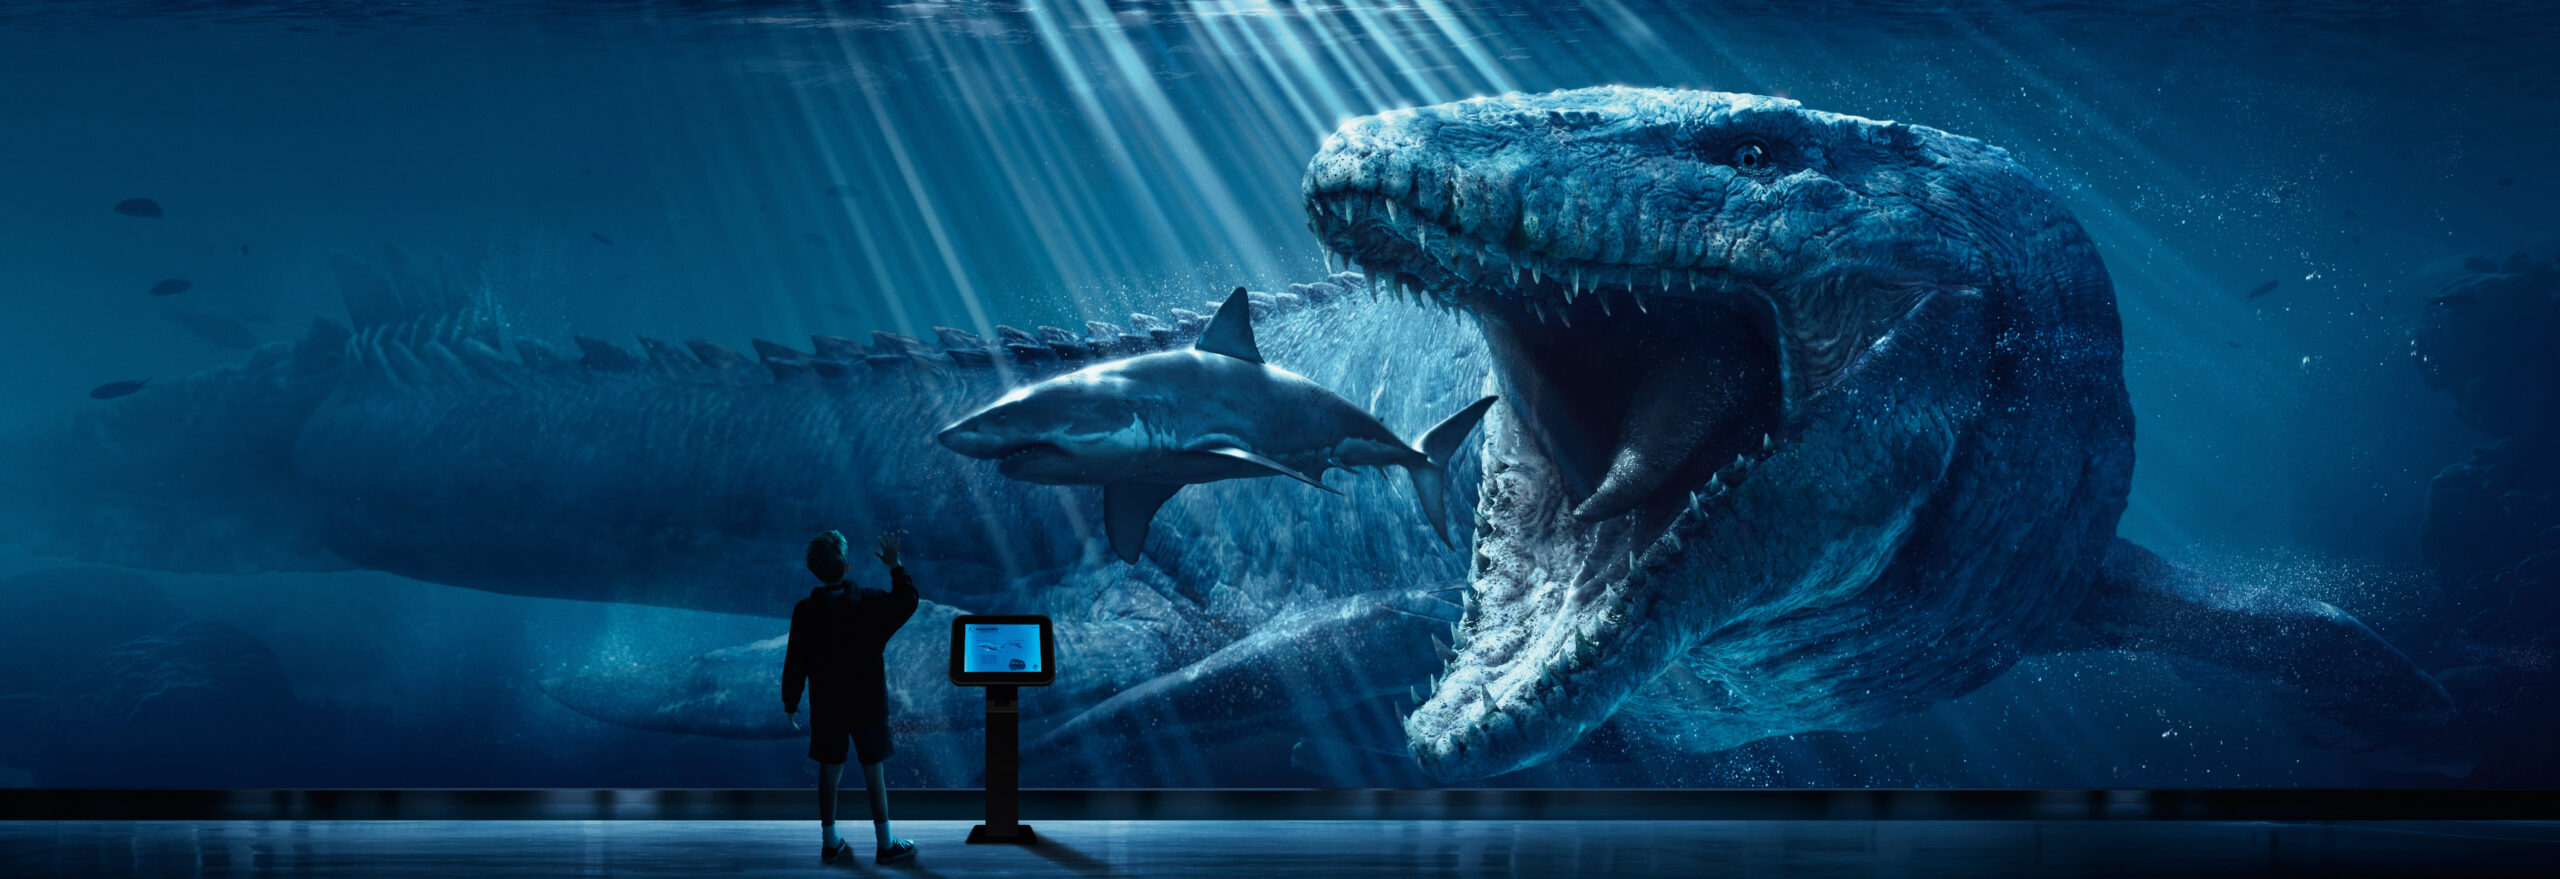 Wallpaper Megalodon Wallpaper, Digital Art, Jurassic World, Movies